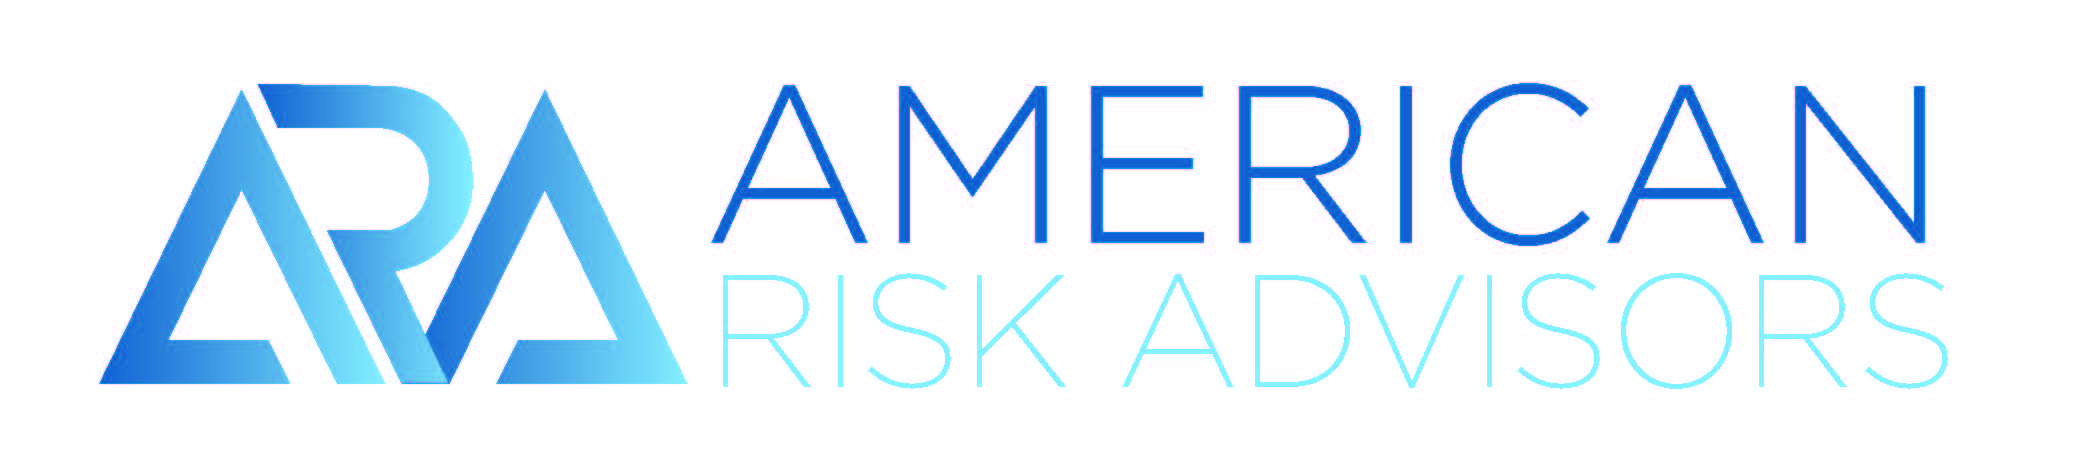 American Risk Advisors